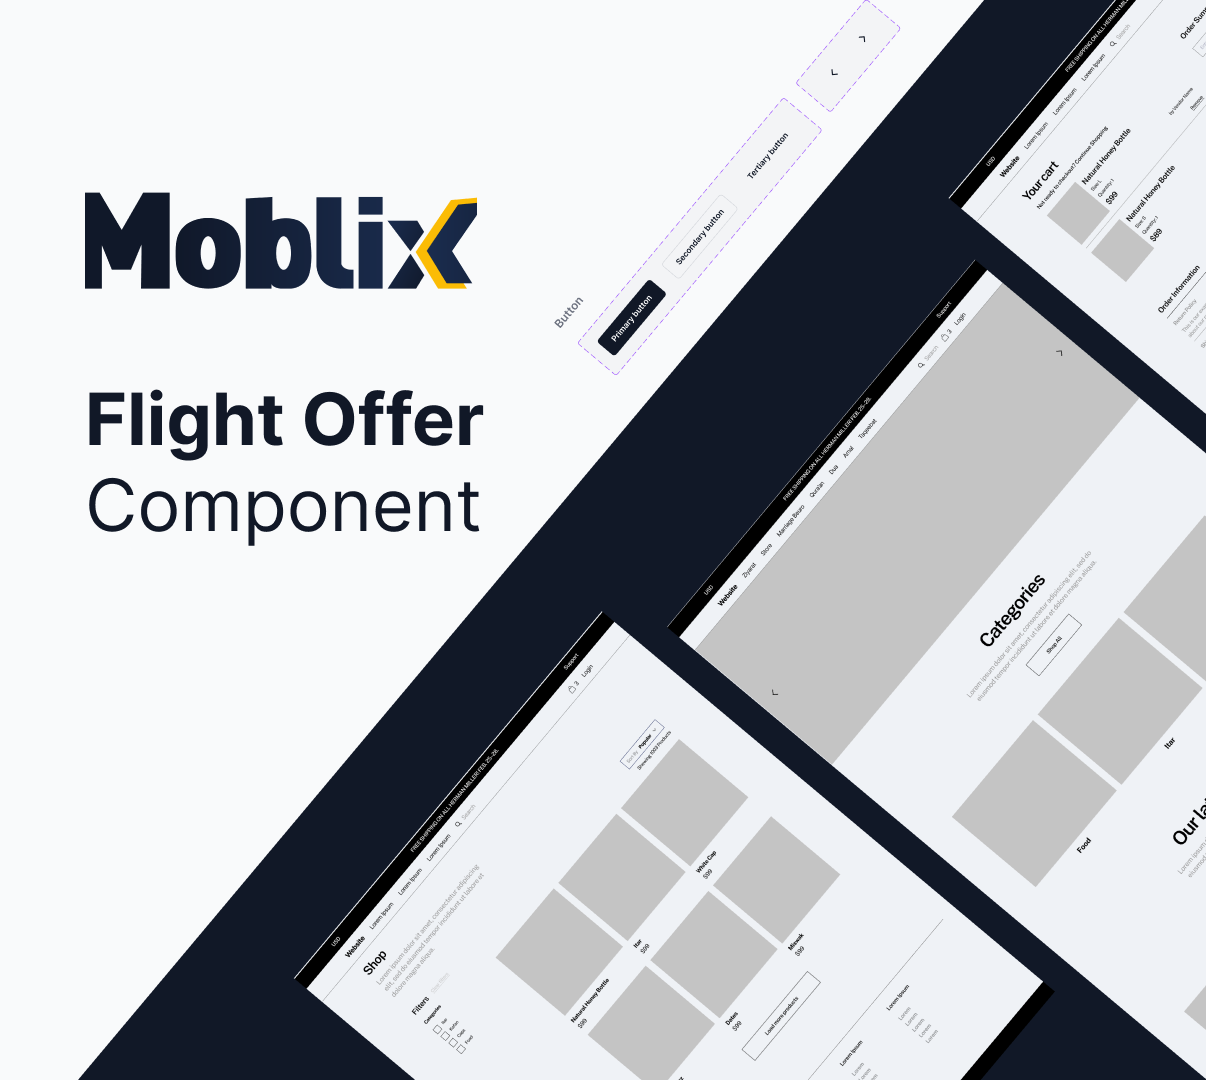 Apresentando o Componente Moblix Flight Offer